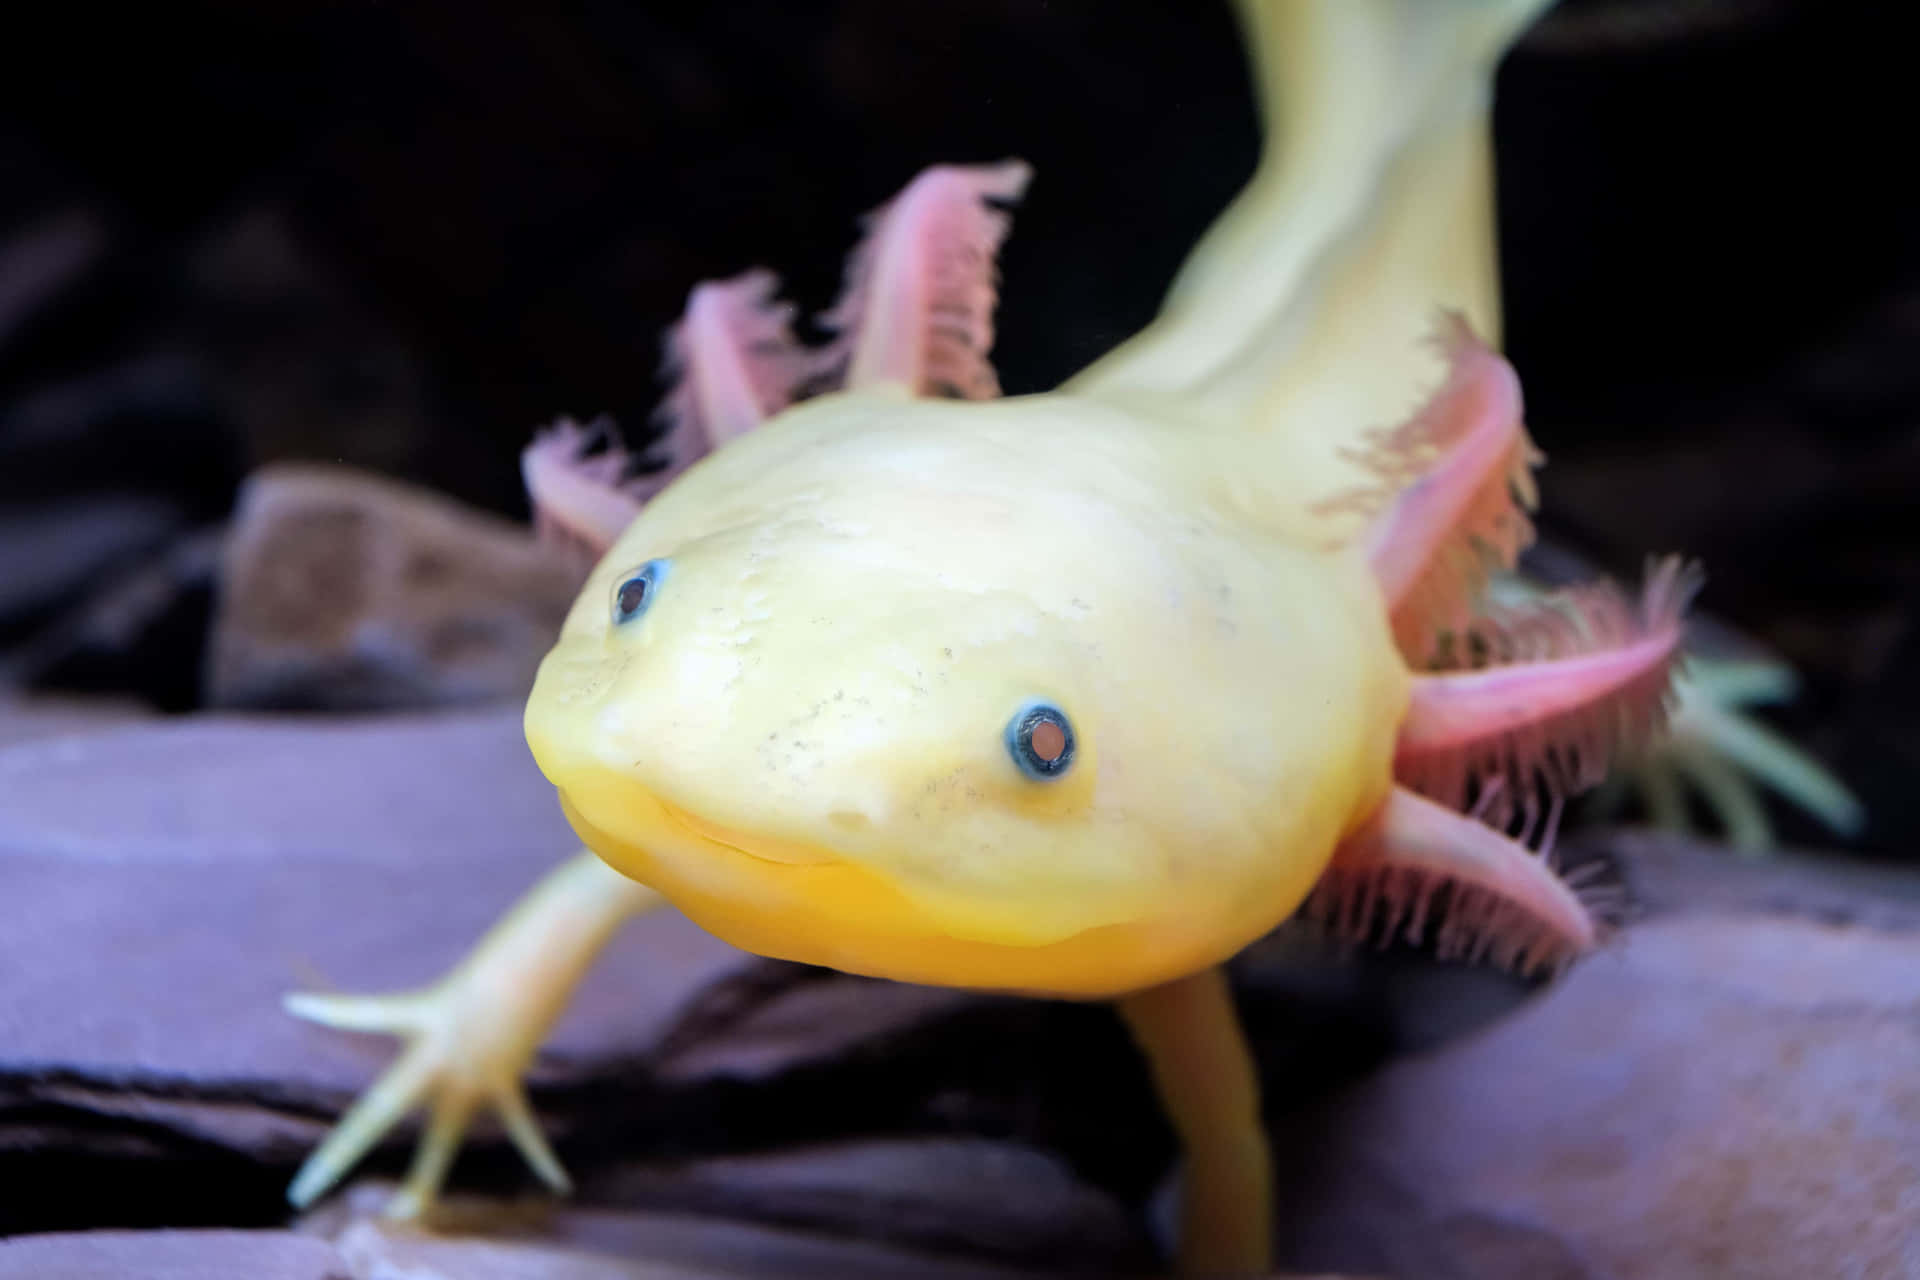 A beautiful close-up of an Axolotl